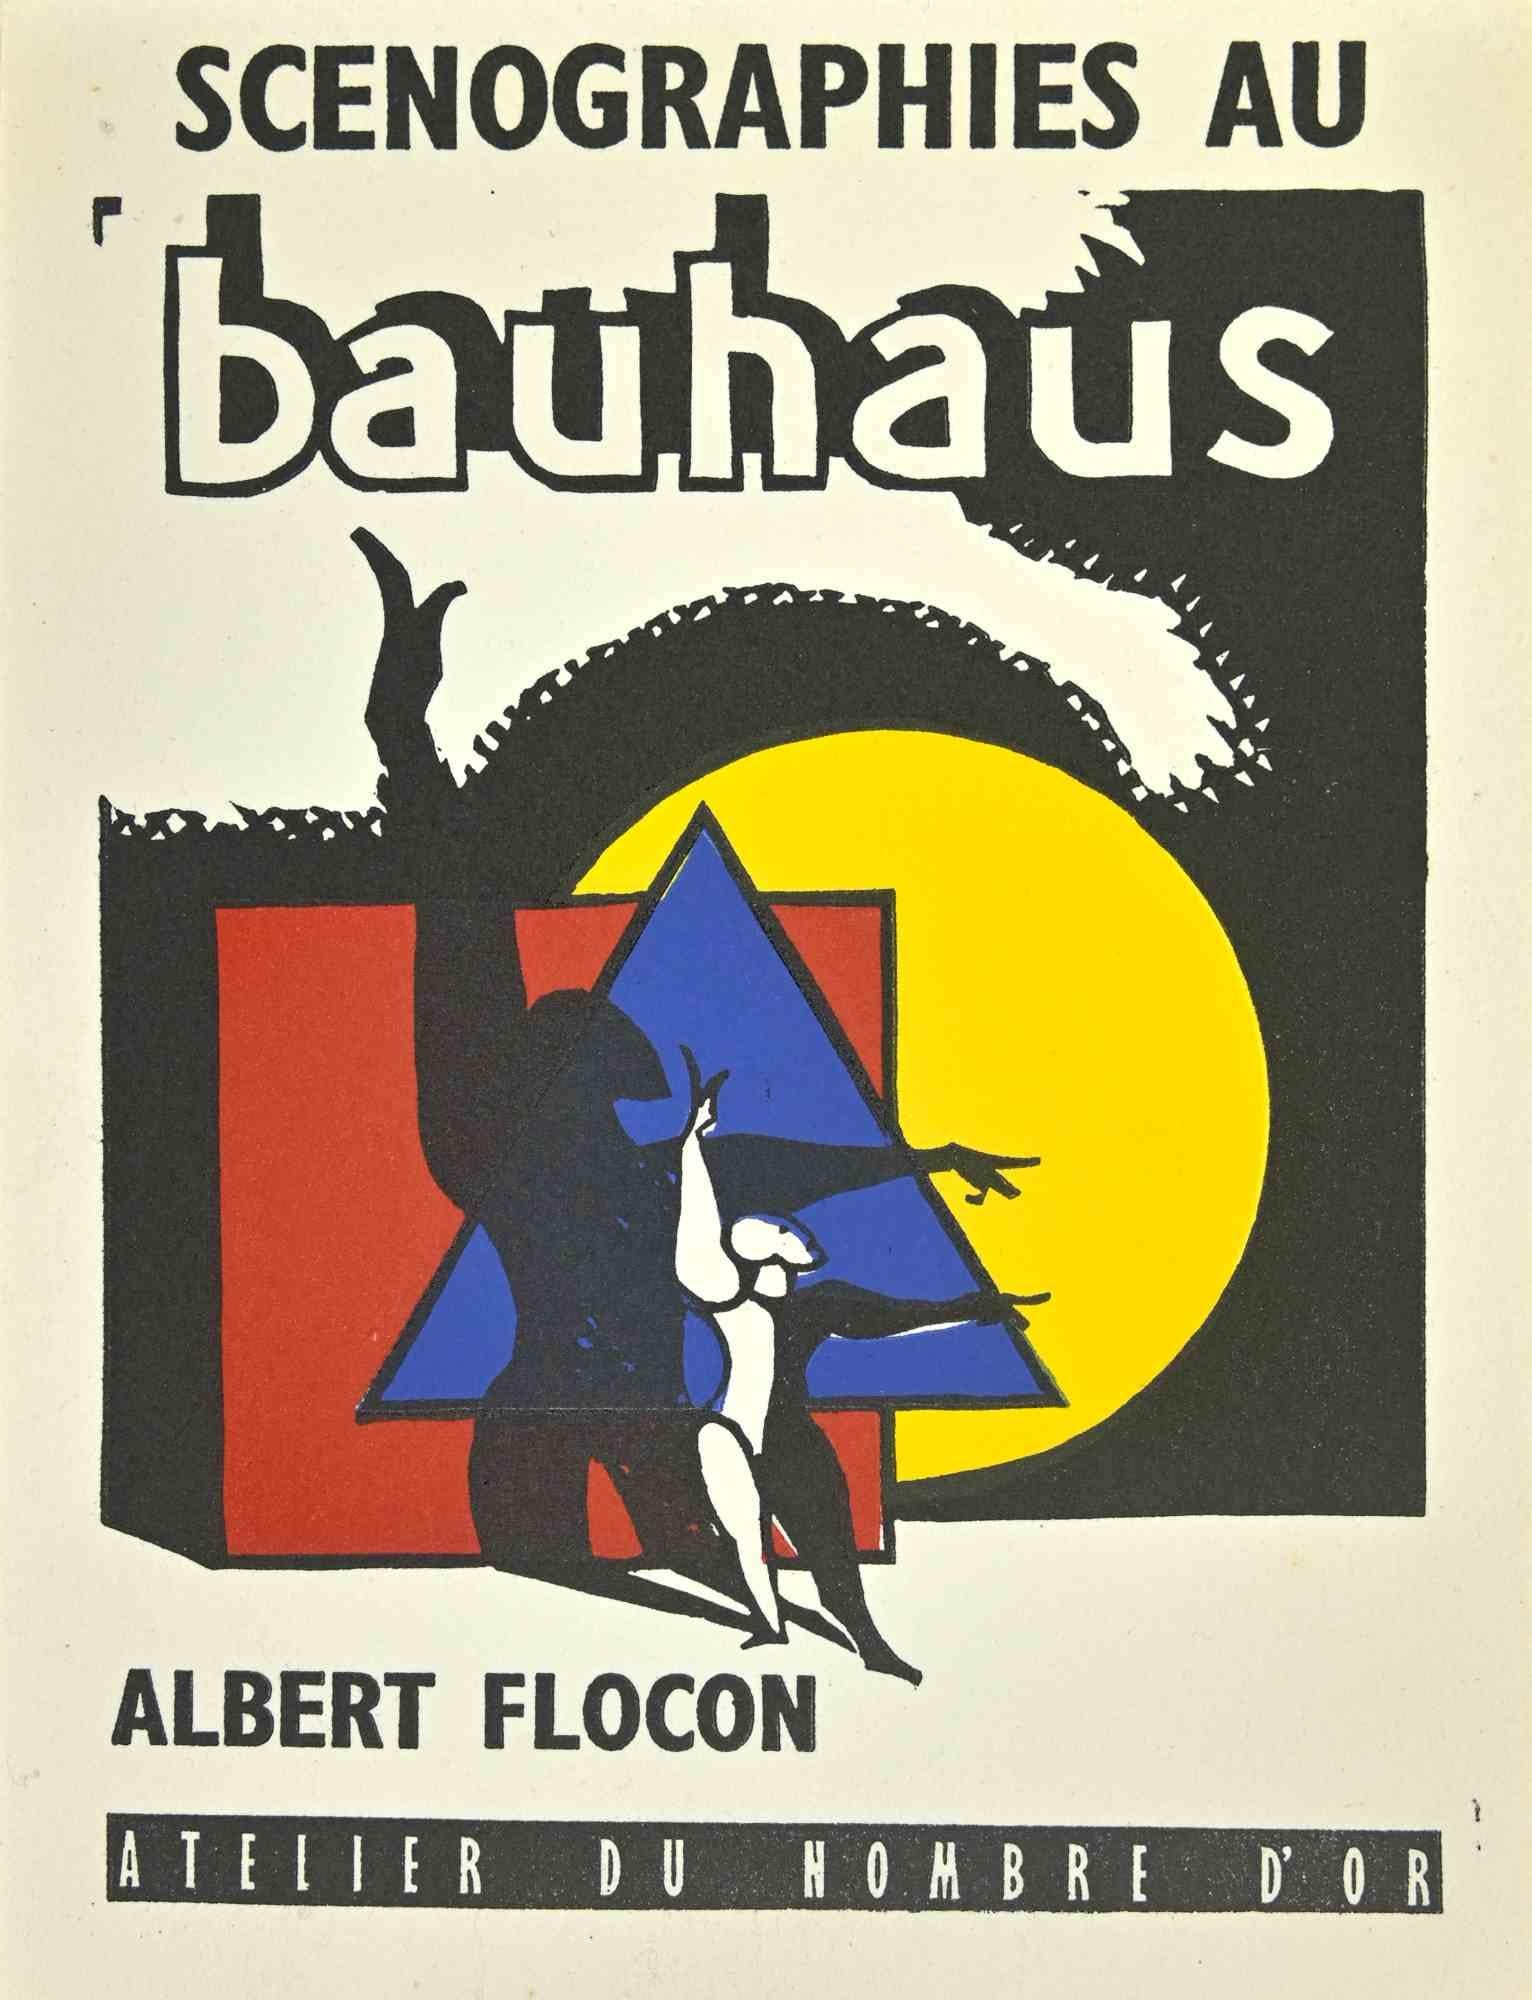 Couverture de "Scenographiess du Bauhaus" - gravure sur bois d'Albert Flocon - années 1940